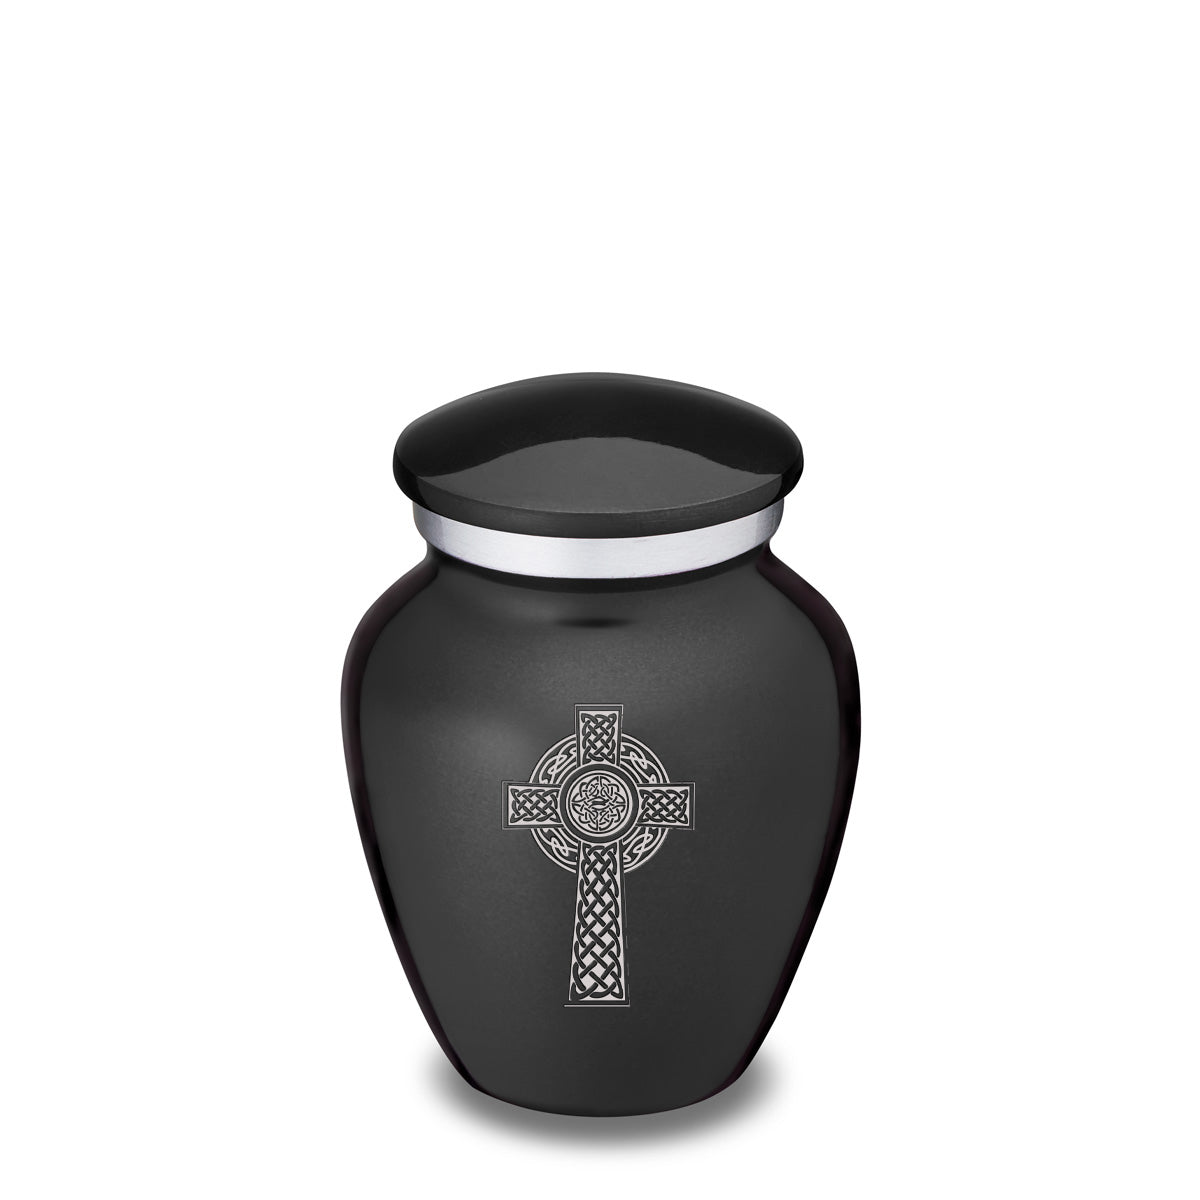 Keepsake Embrace Charcoal Celtic Cross Cremation Urn